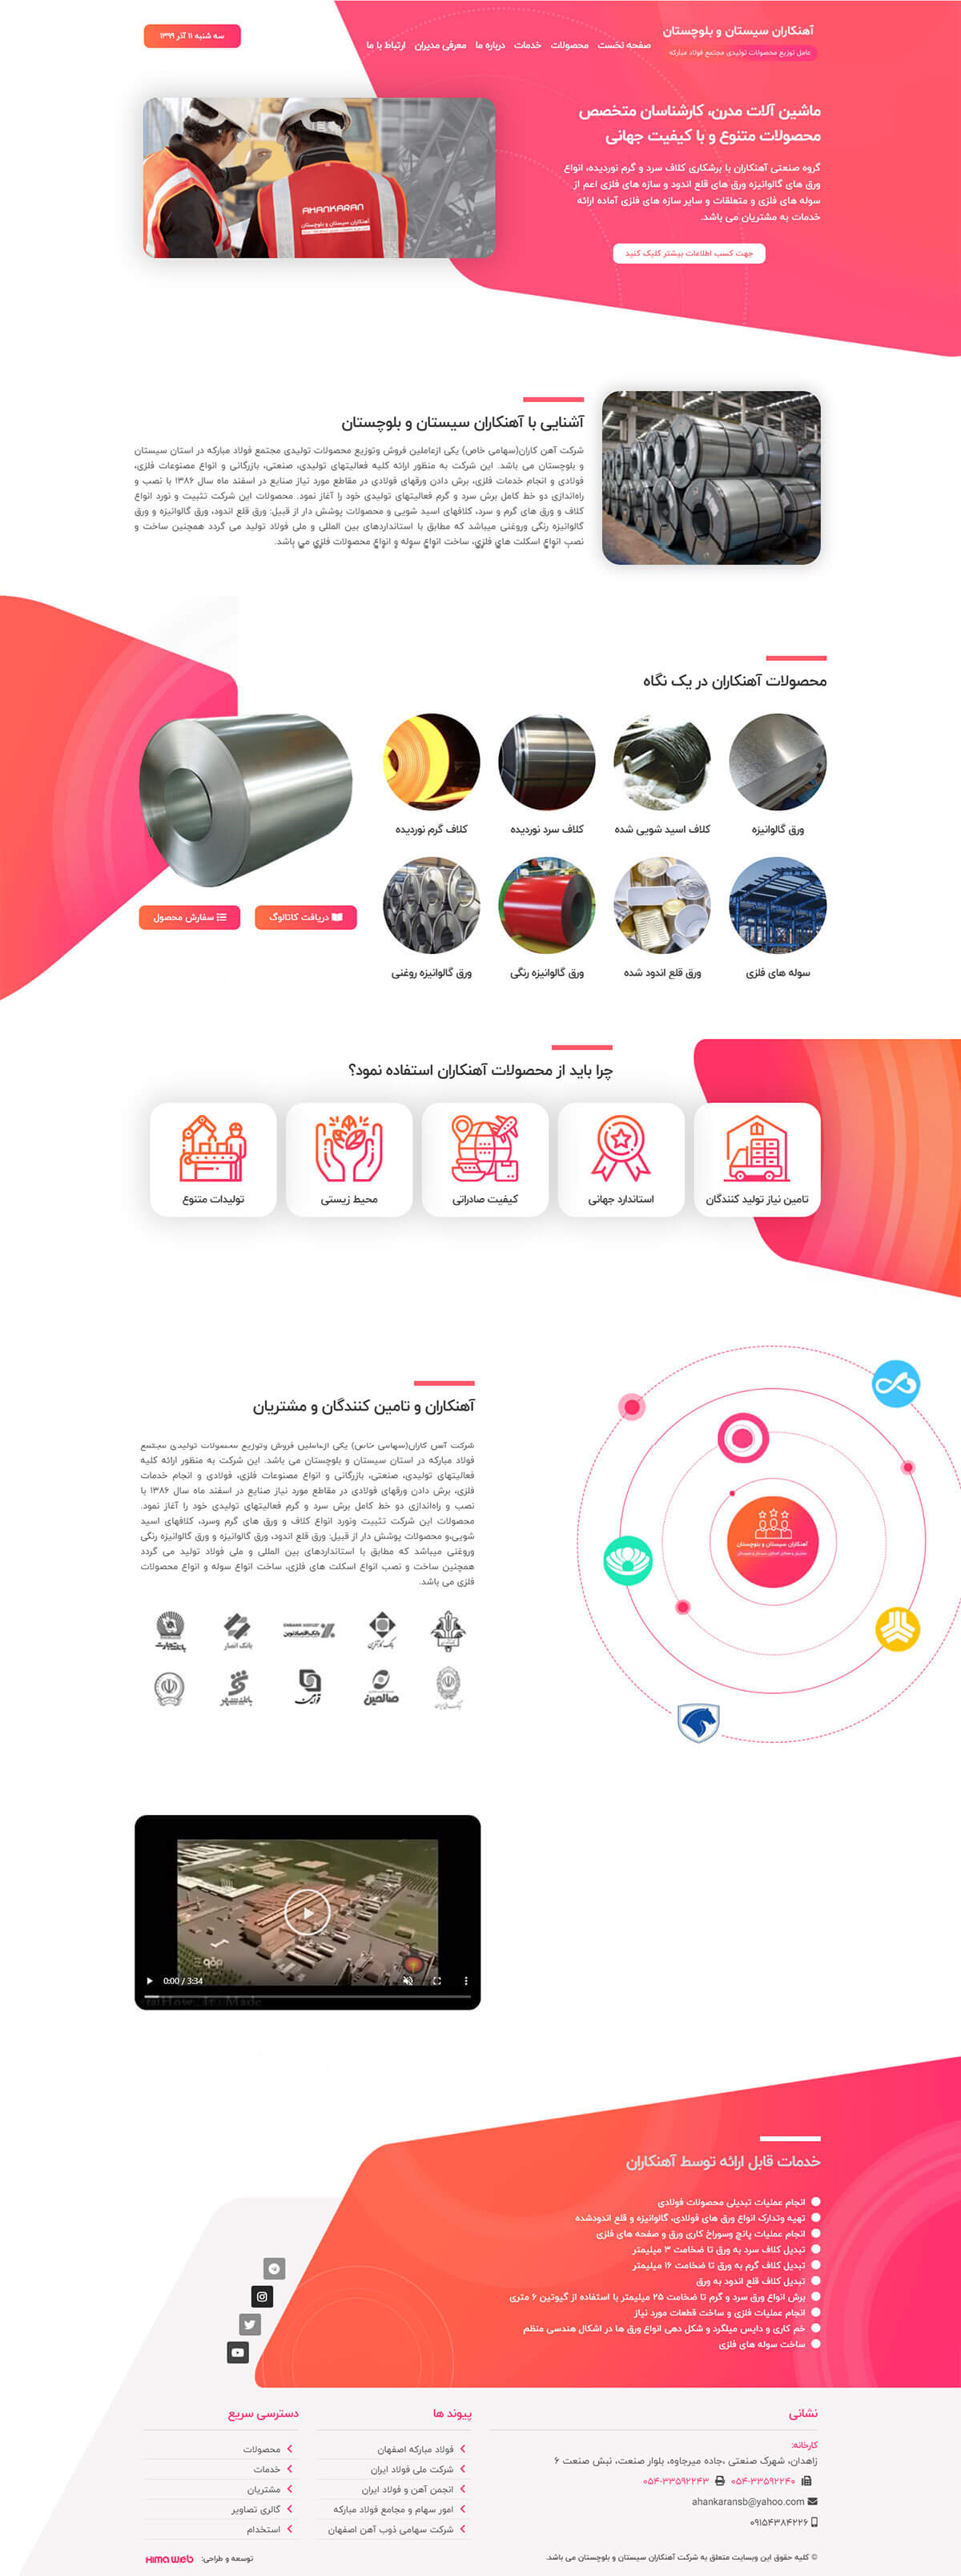 طراحب وب سایت شرکت آهنکاران سیستان و بلوچستان